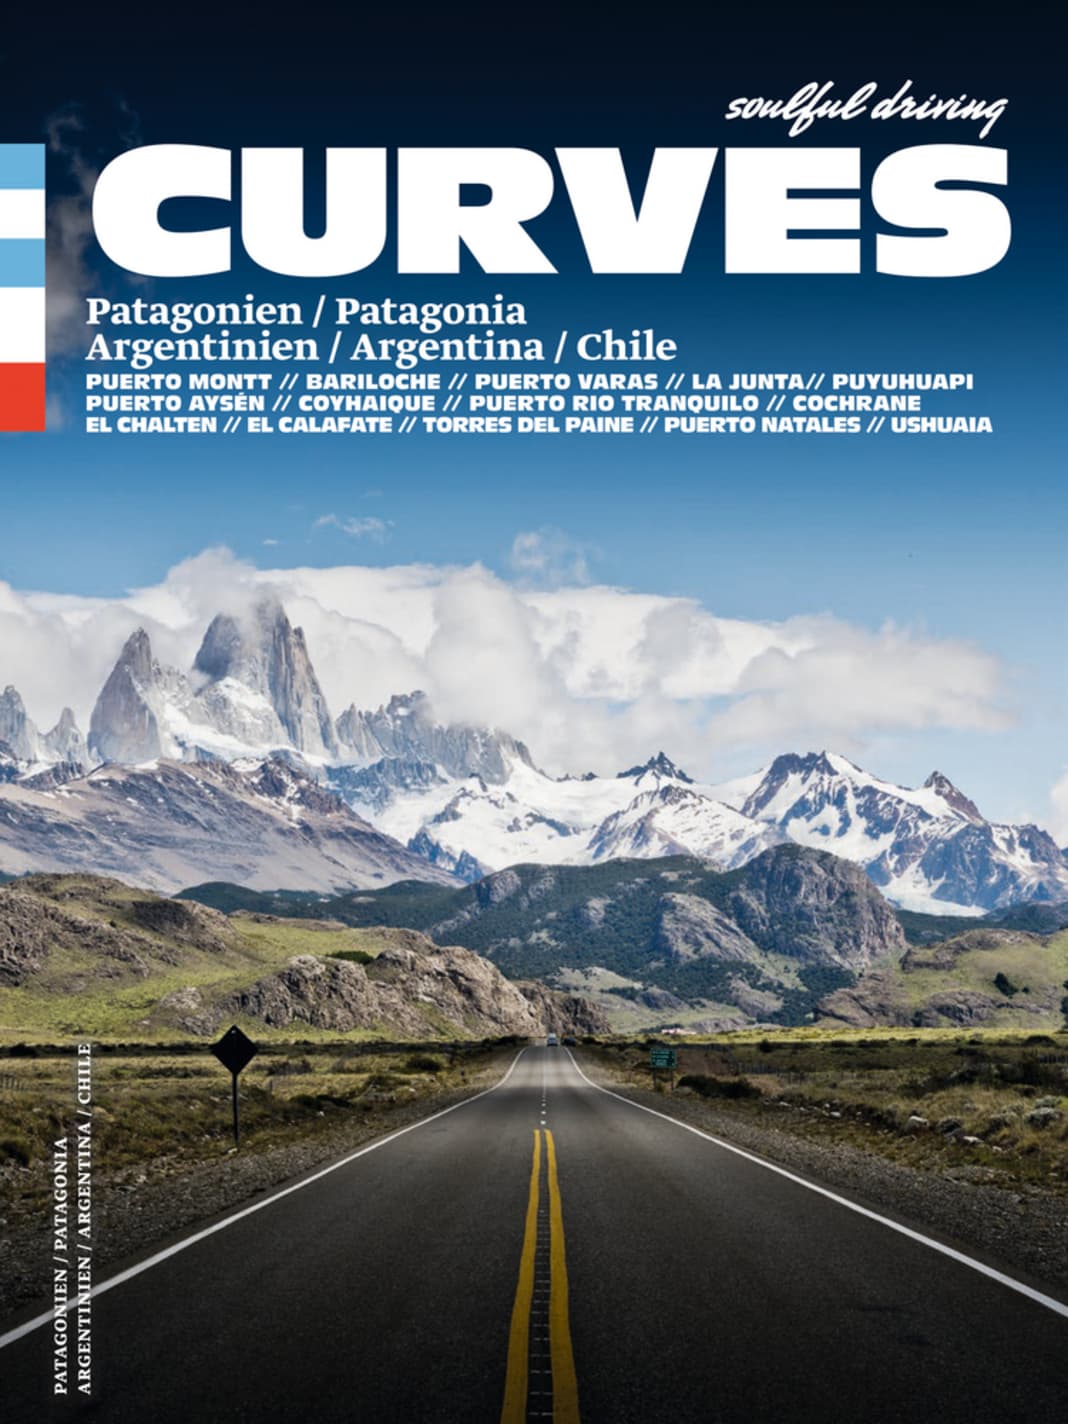 CURVES Patagonien